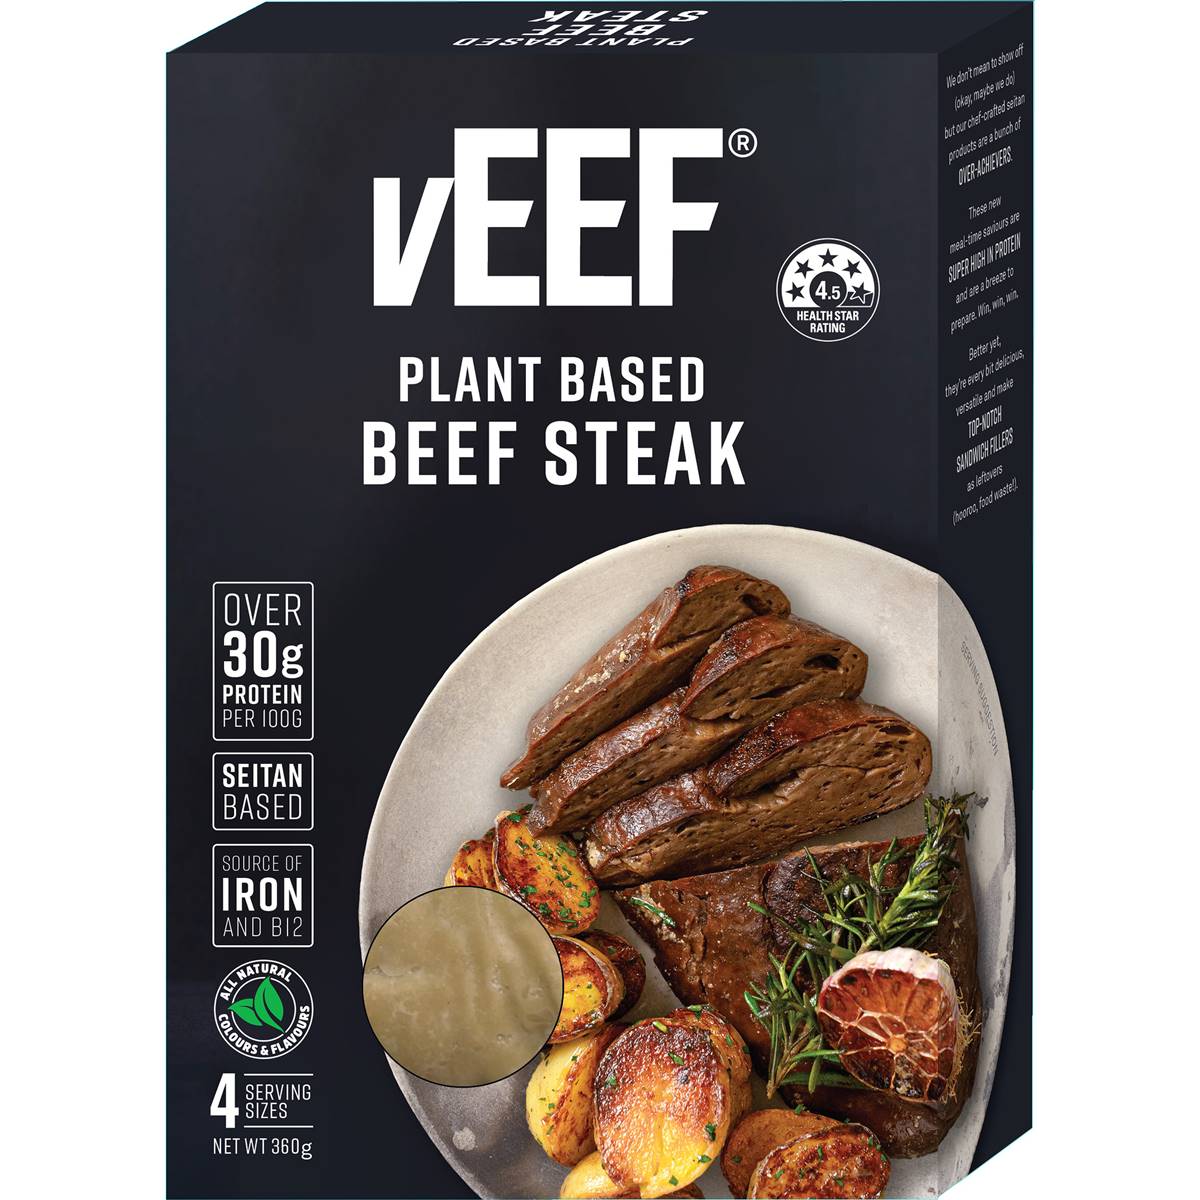 Calories in Veef Plant Based Beef Steak